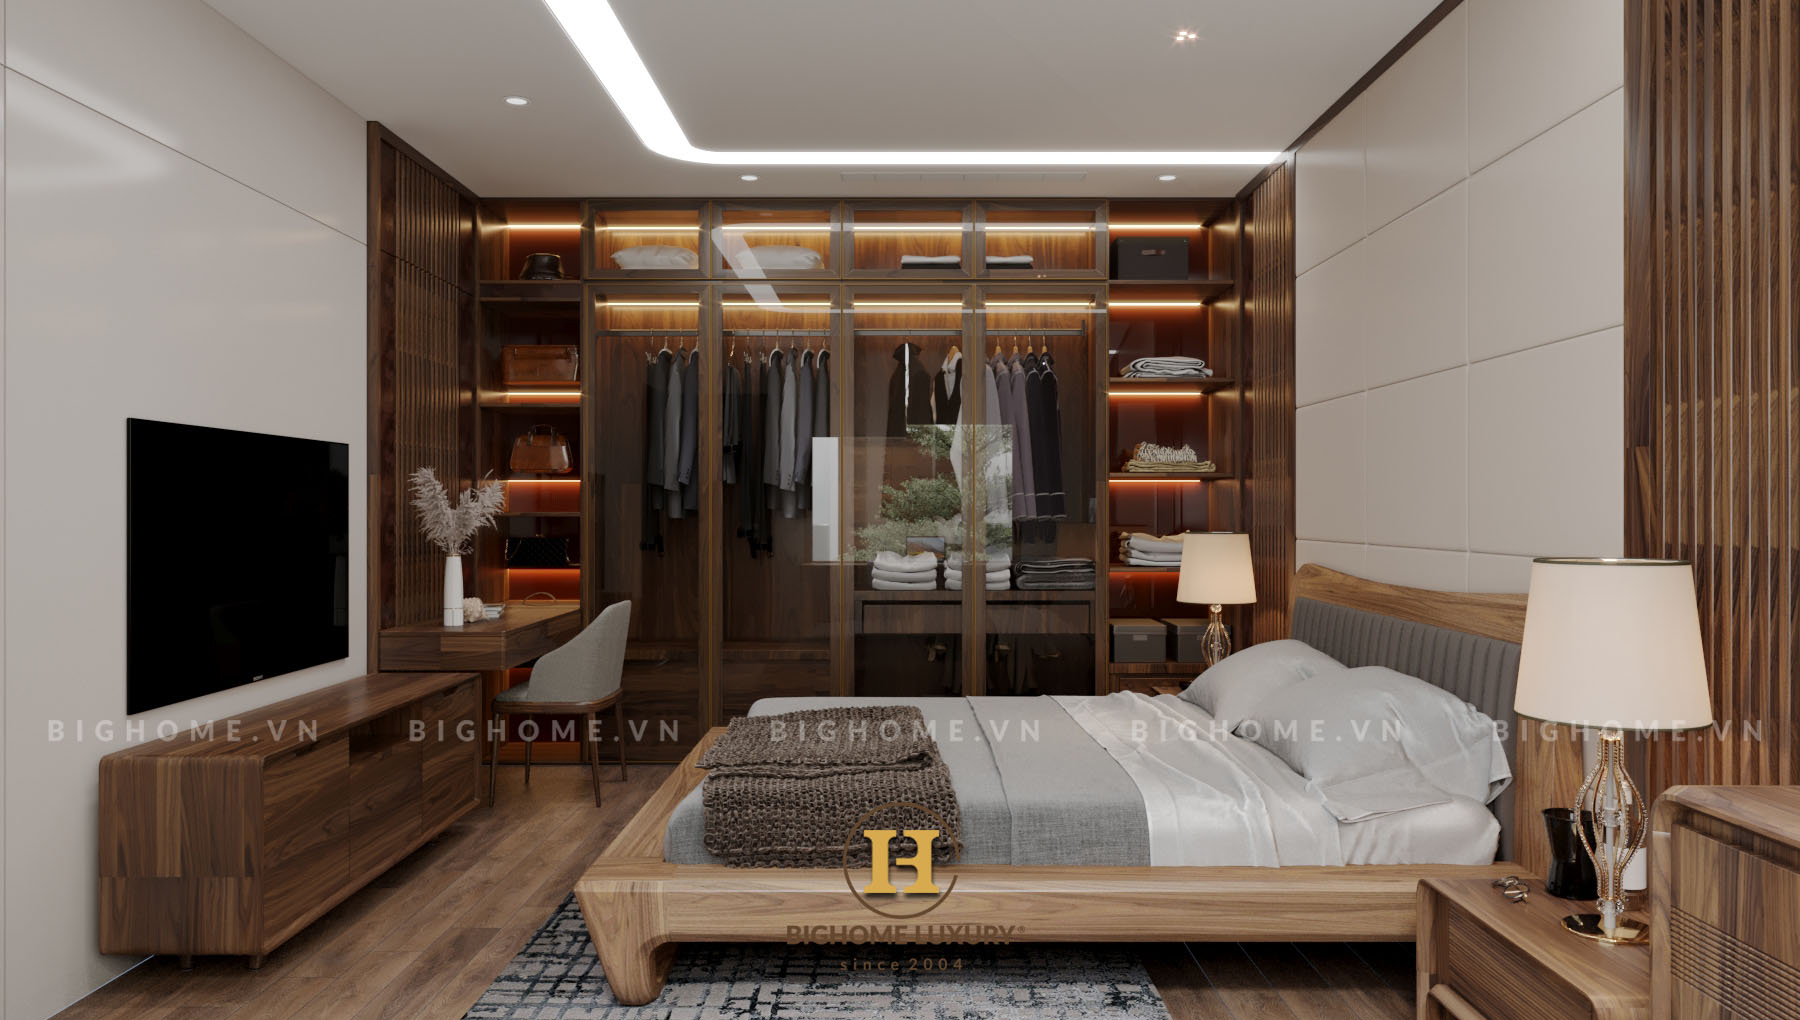 Thiết kế nội thất biệt thự liền kề Vinhomes Ocean Park 3 - The Crown phòng ngủ